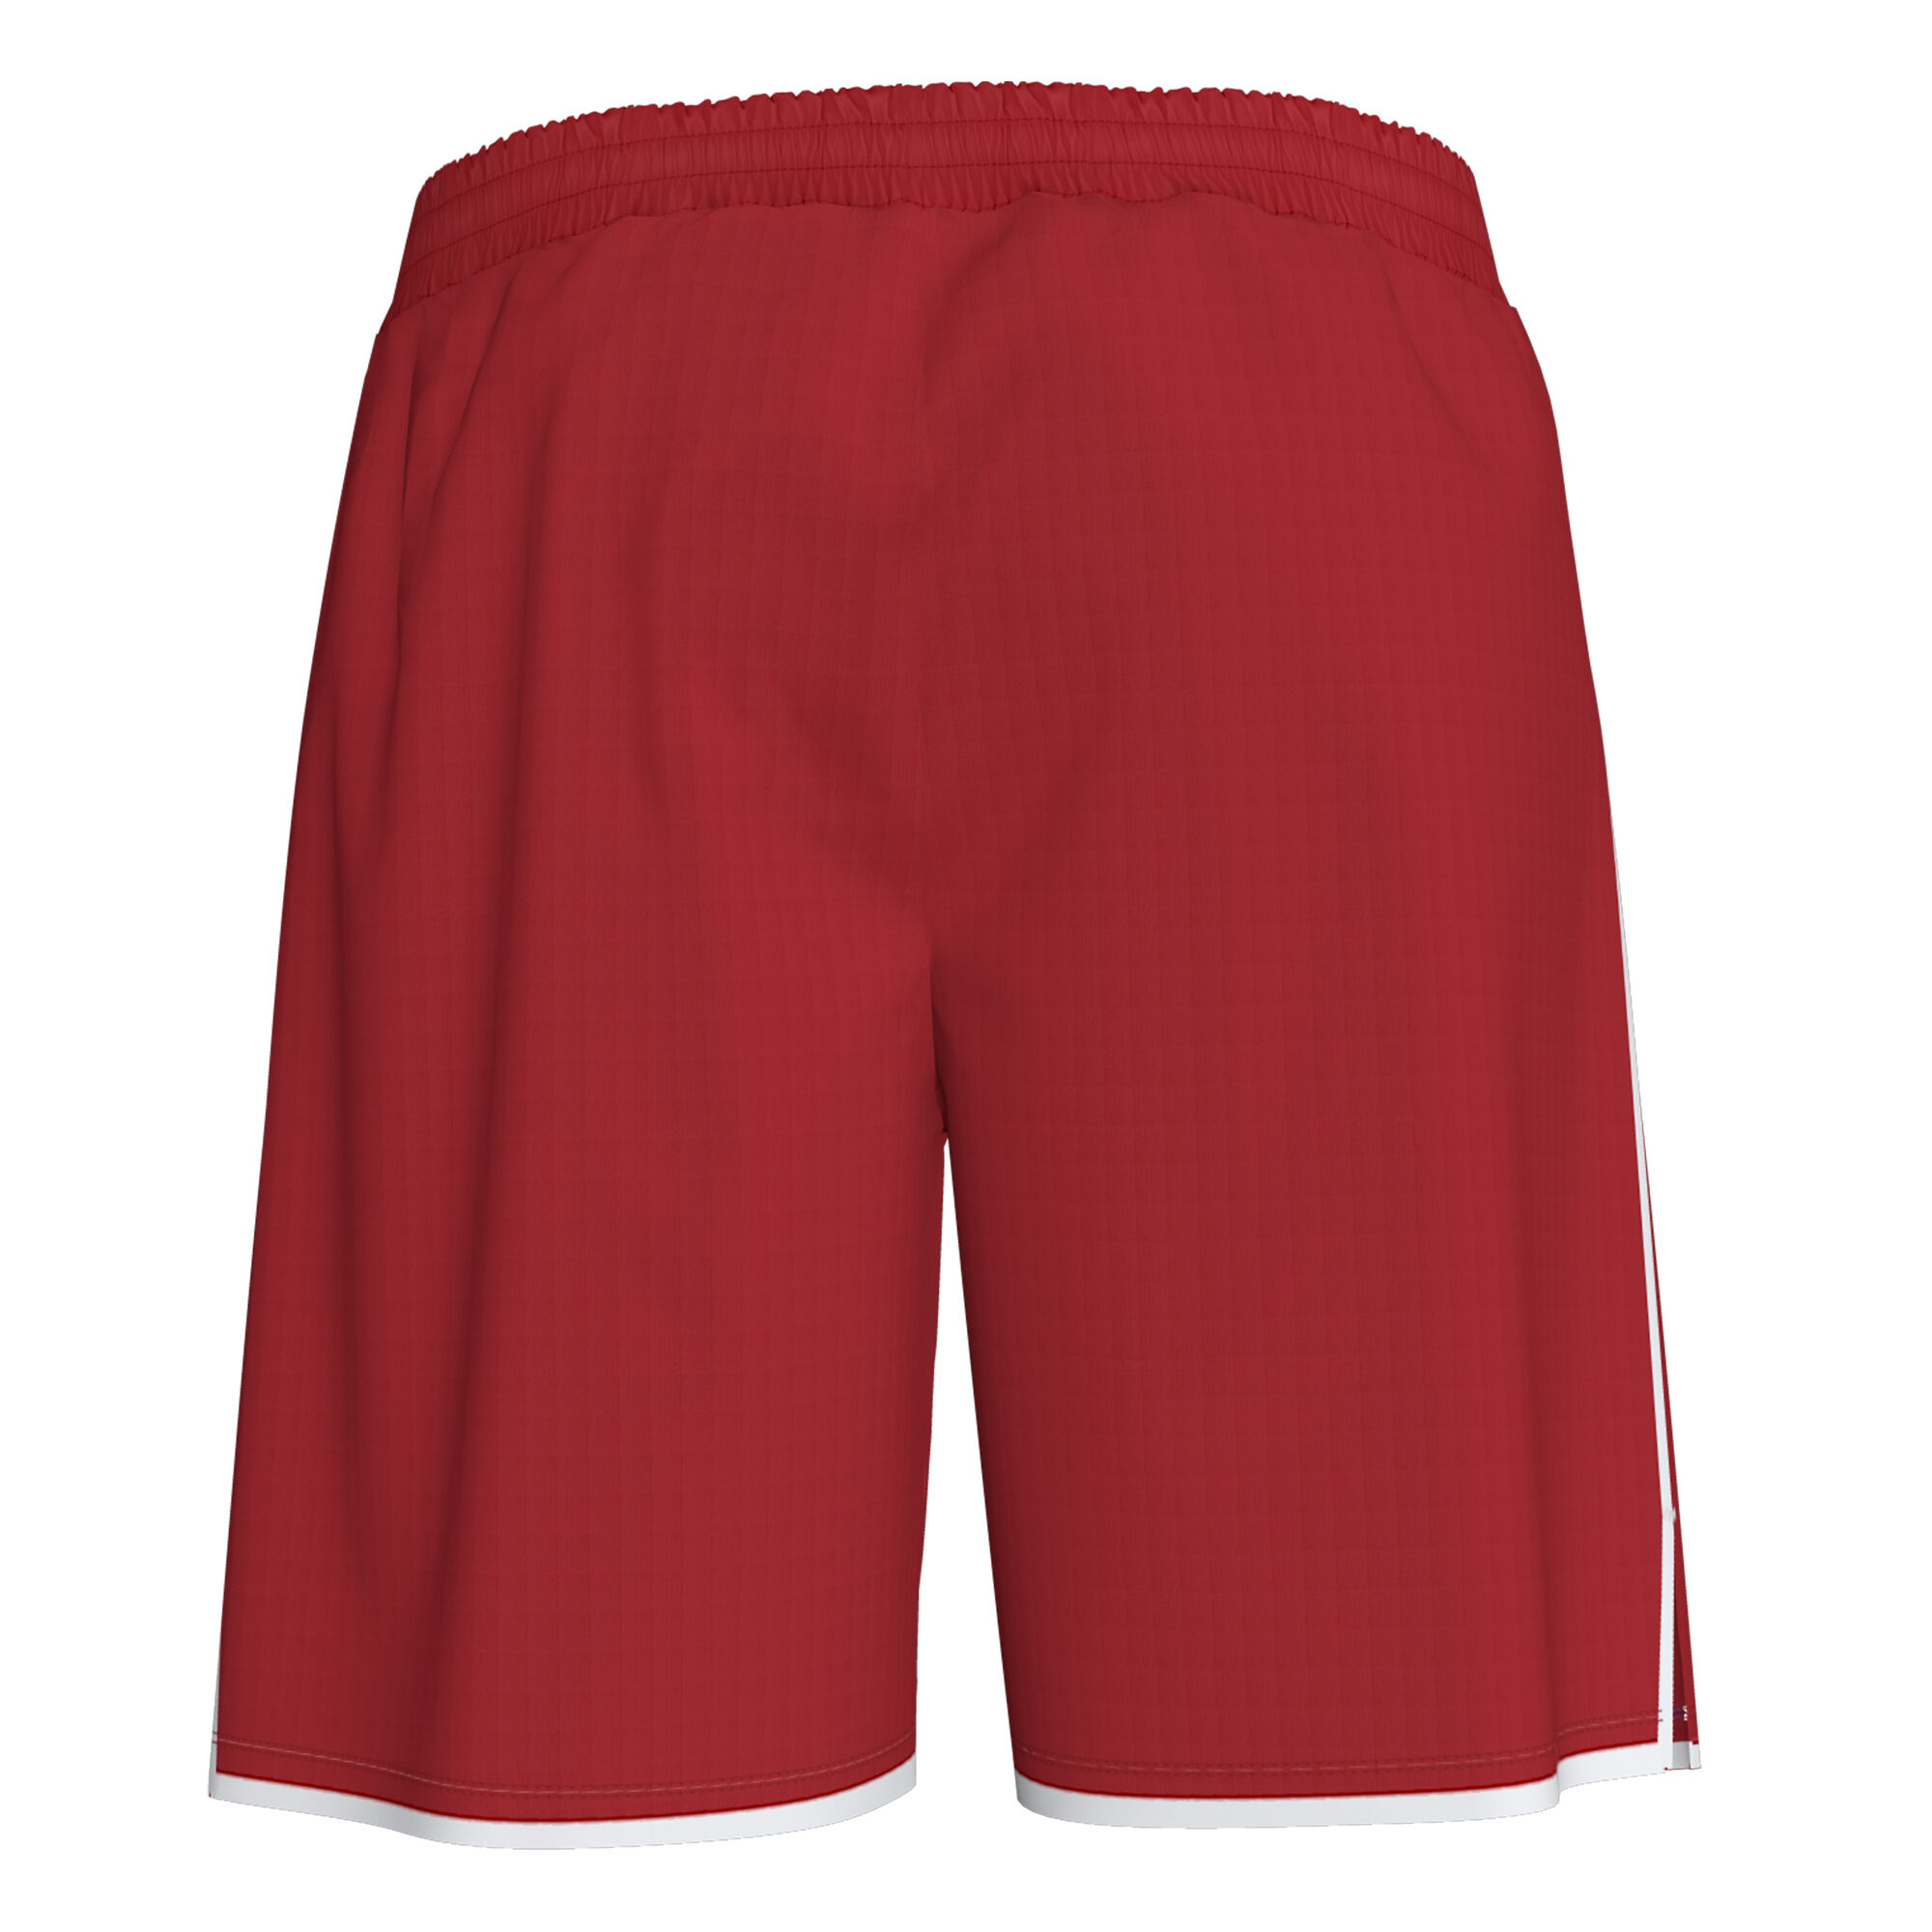 Pantaloni lungi pană bărbaȚi Liga roșu alb